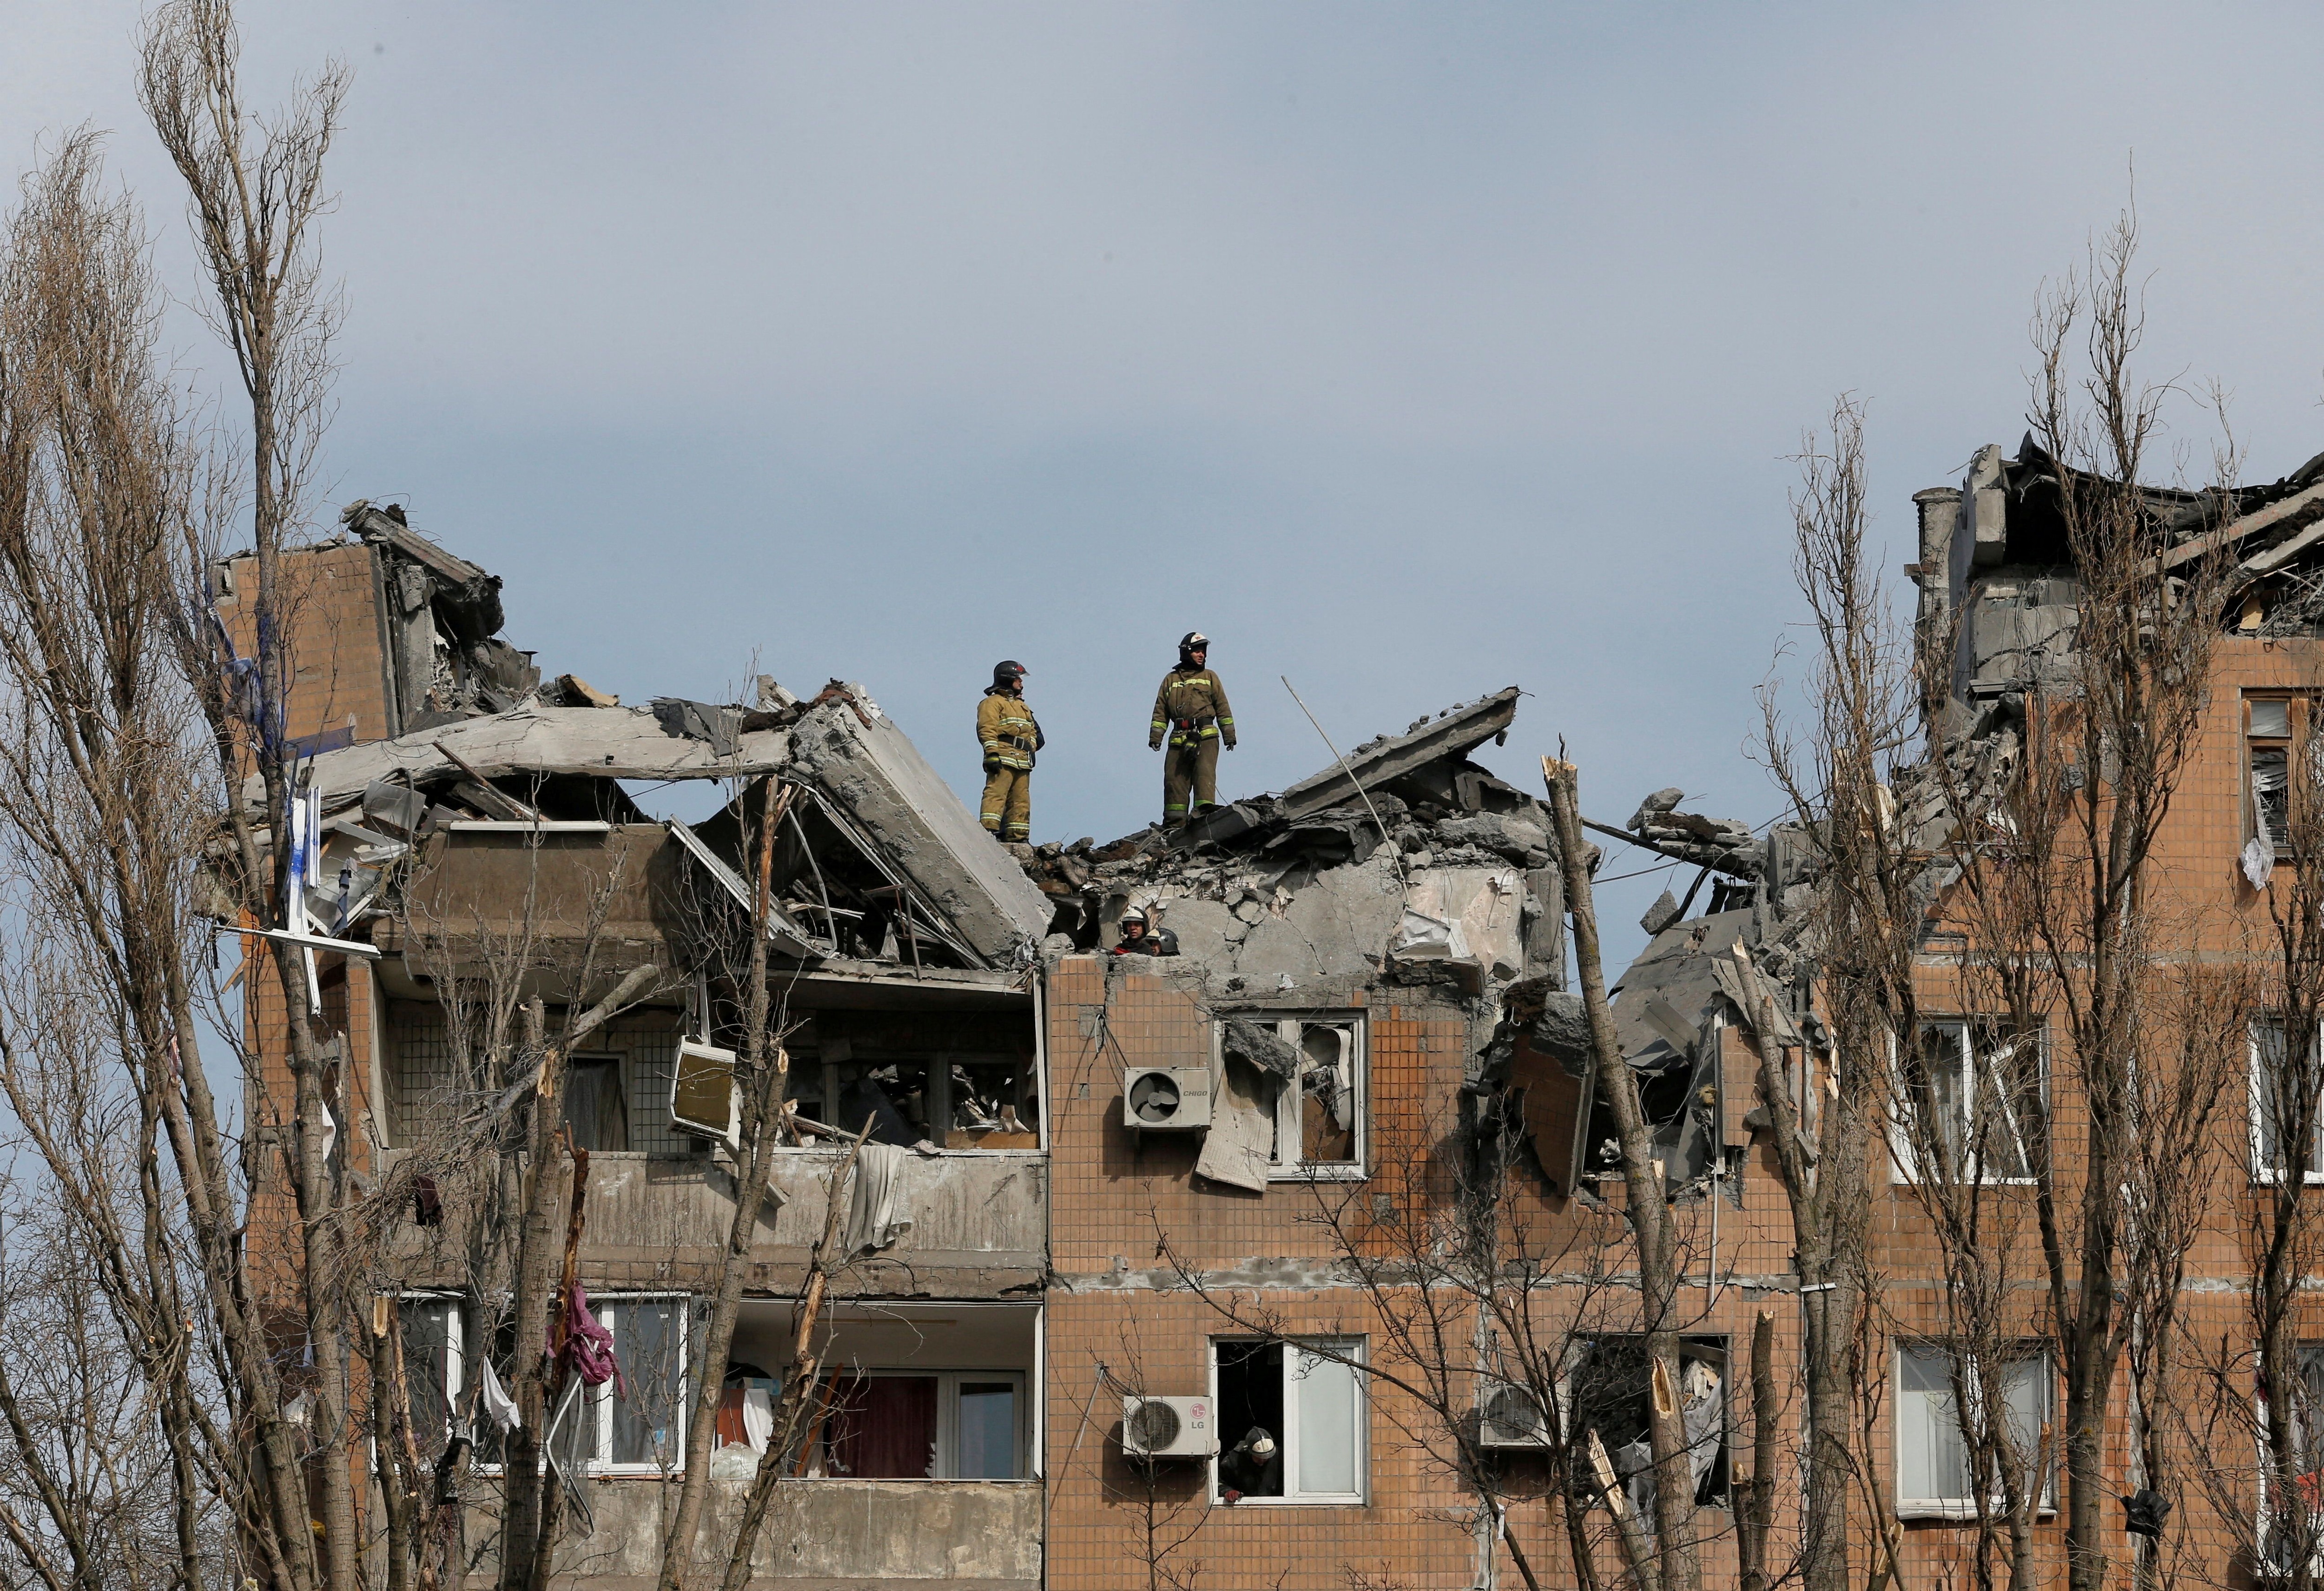 Los bomberos trabajan en un edificio residencial dañado por los bombardeos durante el conflicto entre Ucrania y Rusia en la ciudad de Donetsk, Ucrania, controlada por los separatistas, el 30 de marzo de 2022. (REUTERS/Alexander Ermochenko)